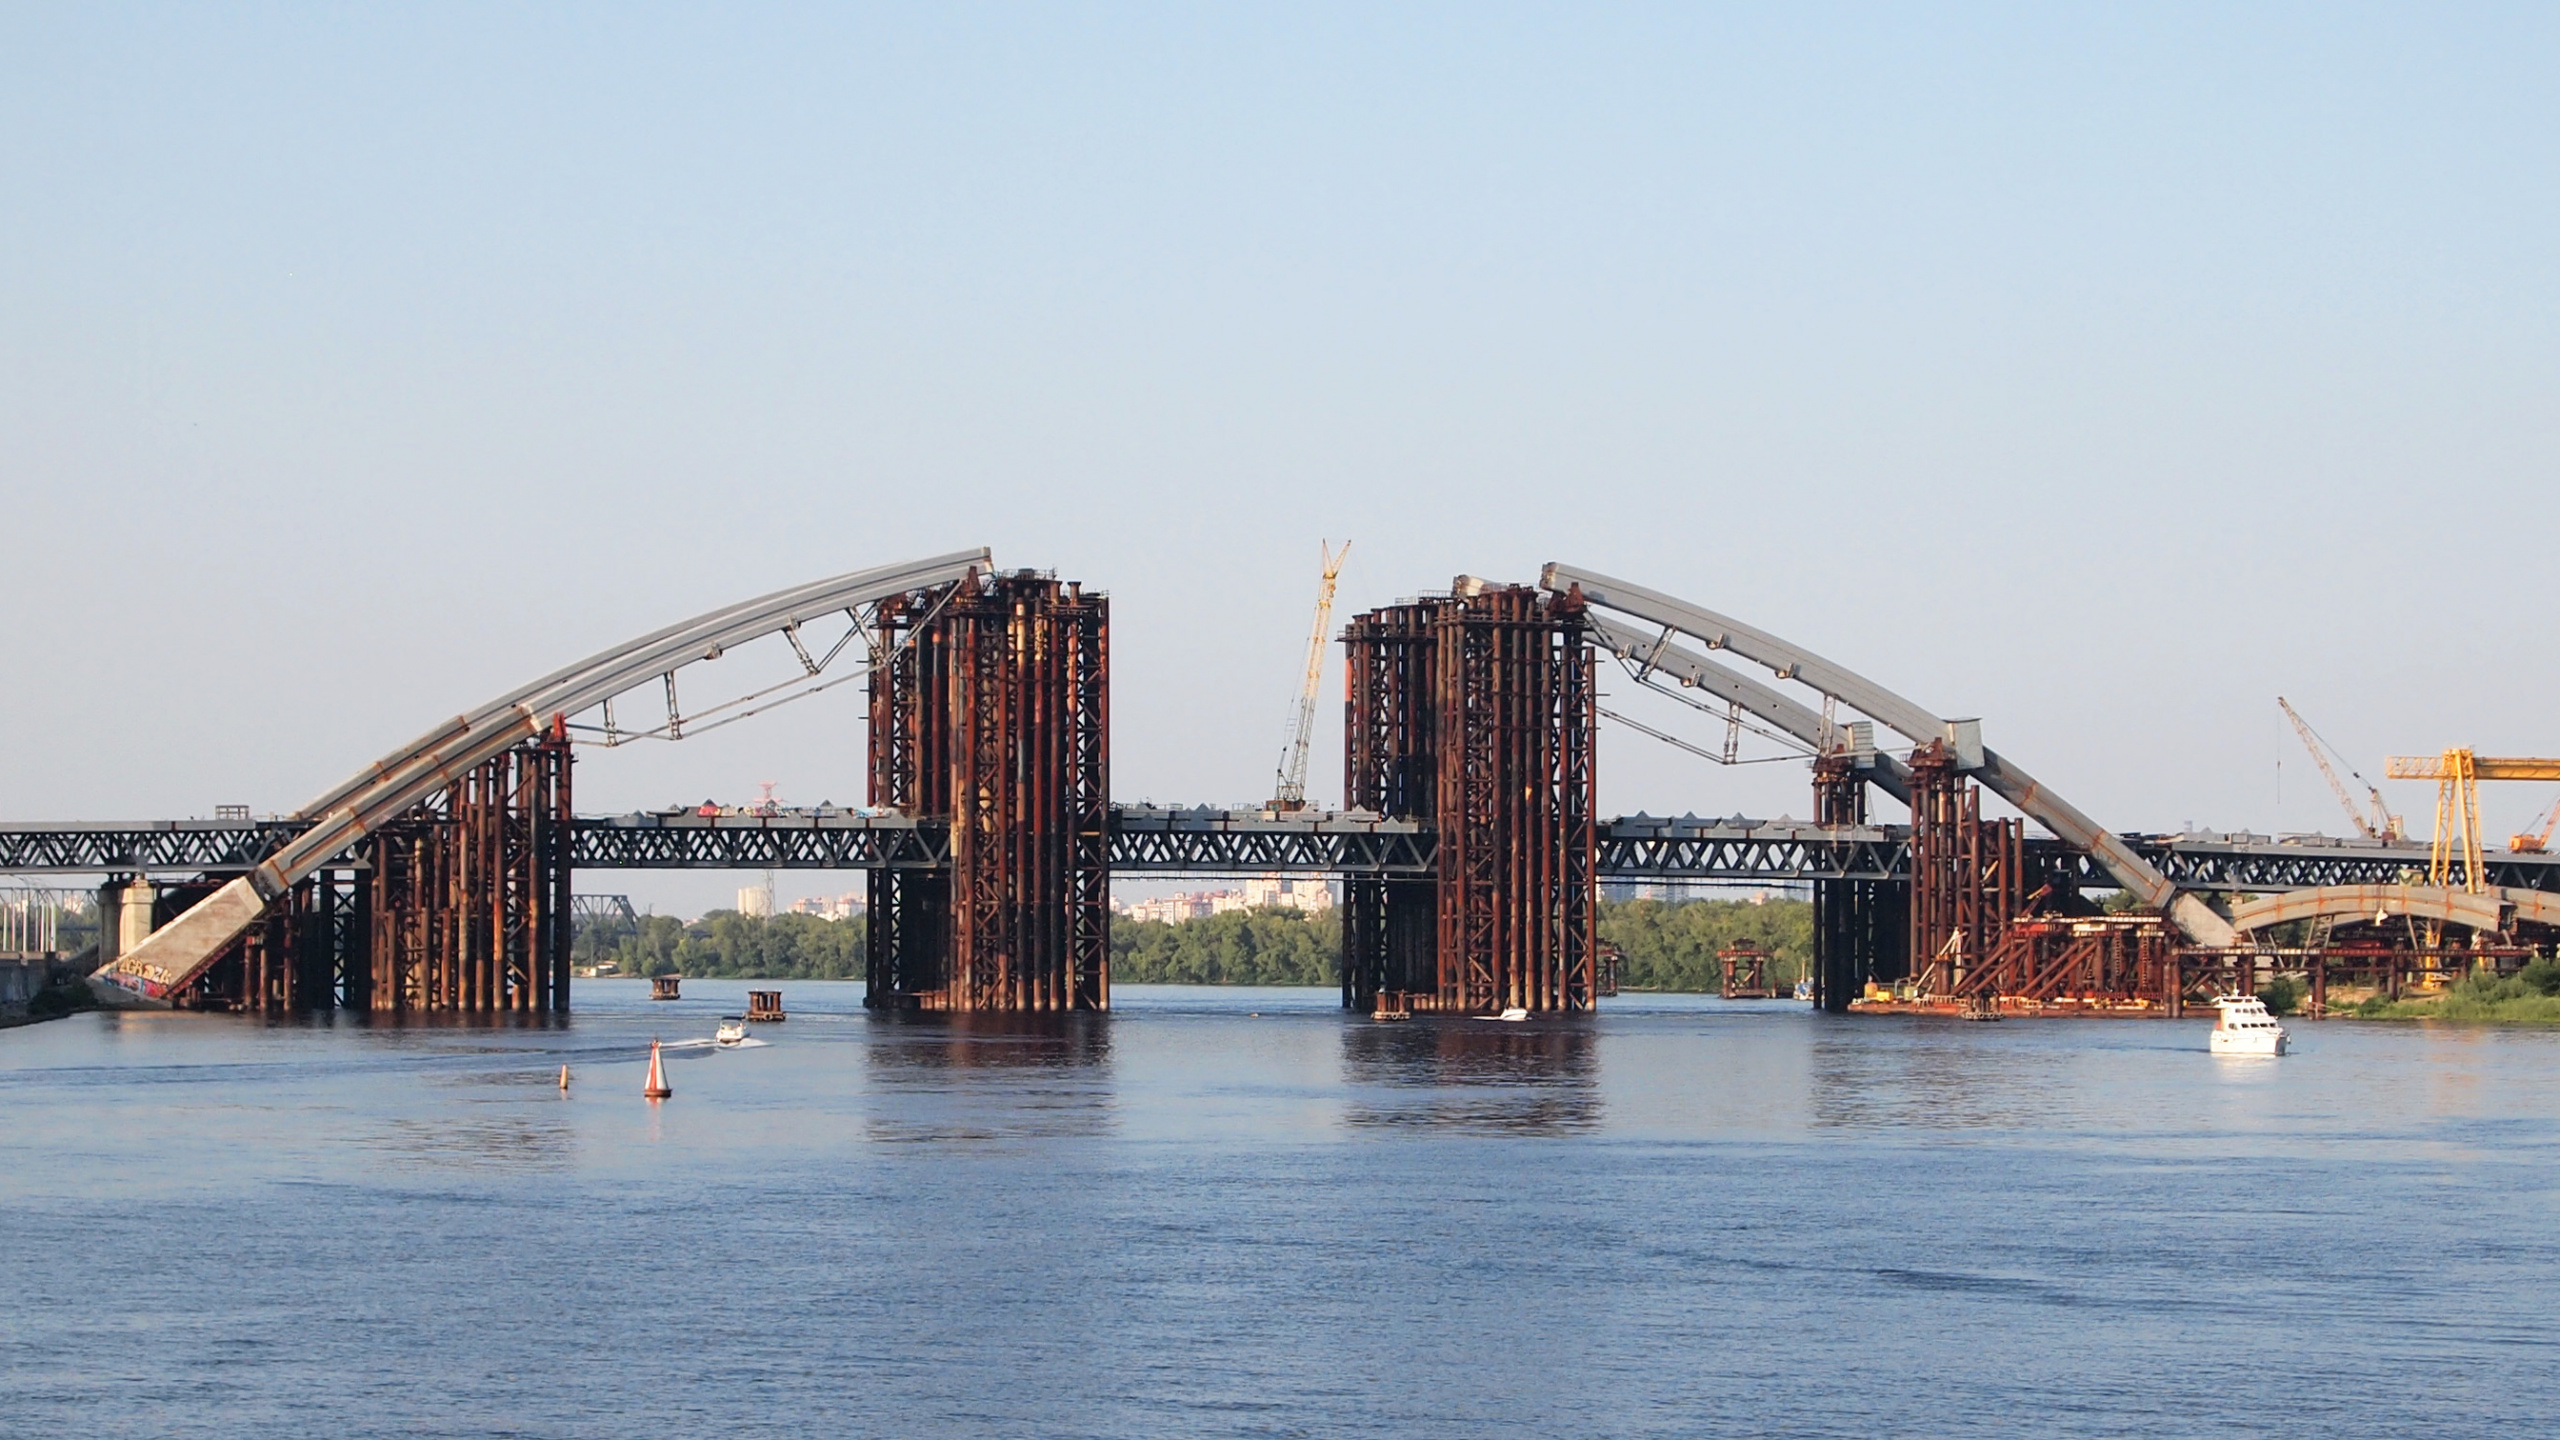 建设, 悬臂桥, 桁架桥, 工程, 拱桥 壁纸 2560x1440 允许